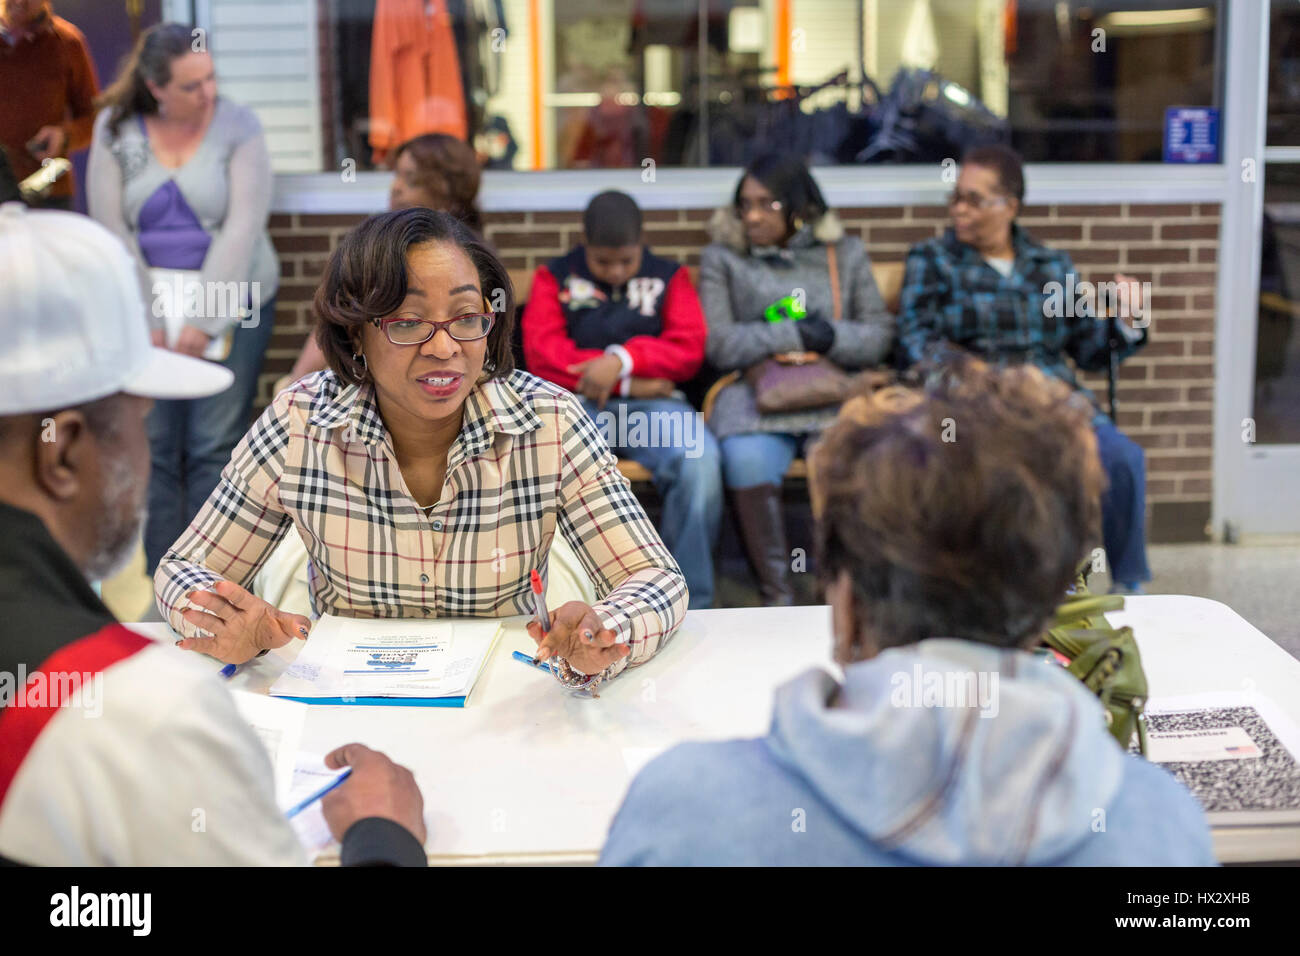 Los abogados reunirse con los residentes de Flint, Michigan, para discutir un juicio de acción de clase para aquellos afectados por el plomo que contaminó el sistema de aguas de la ciudad. Foto de stock